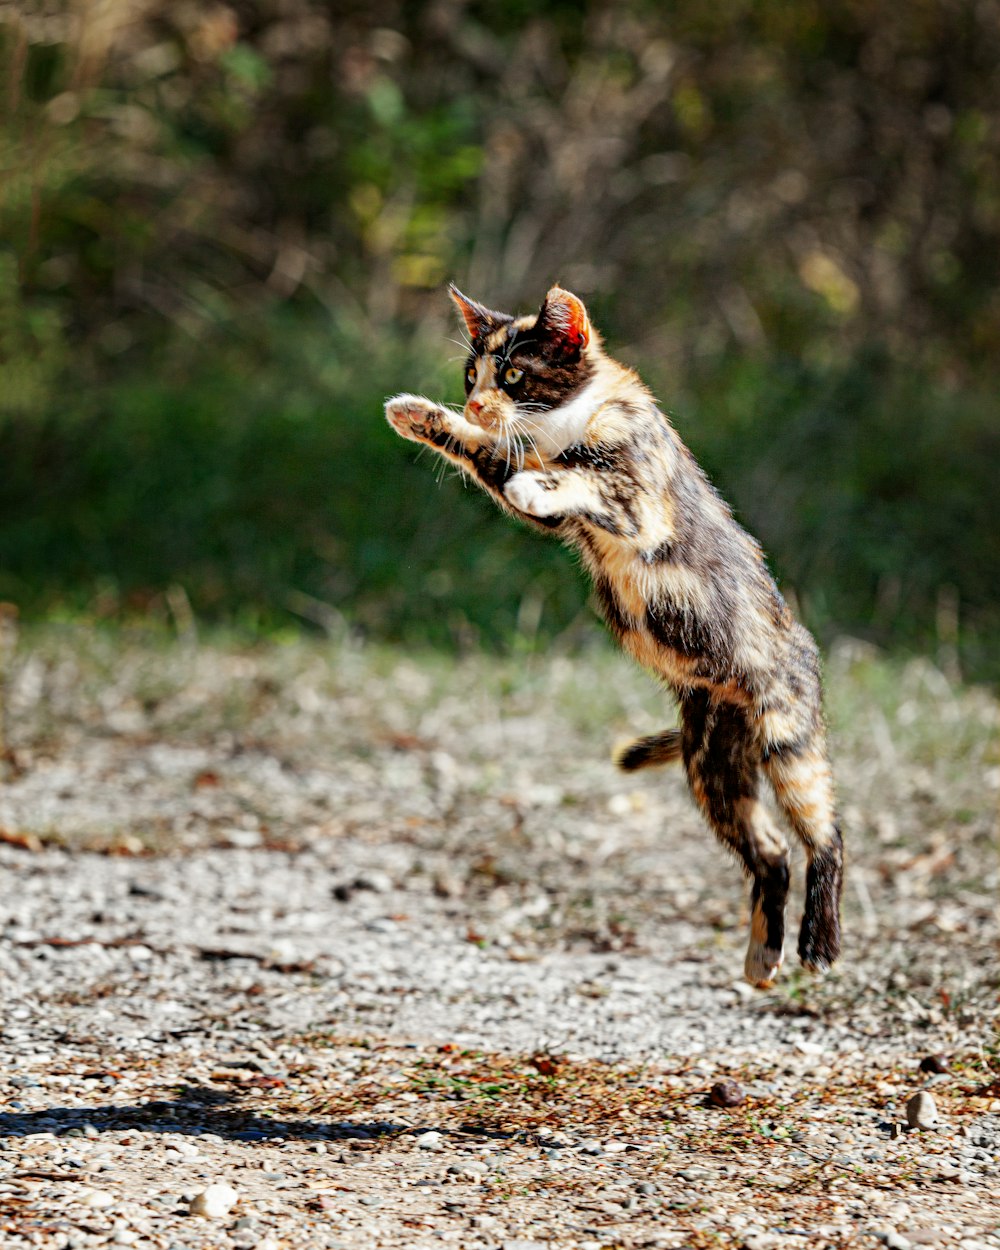 Gato marrón y negro que camina sobre suelo de tierra durante el día